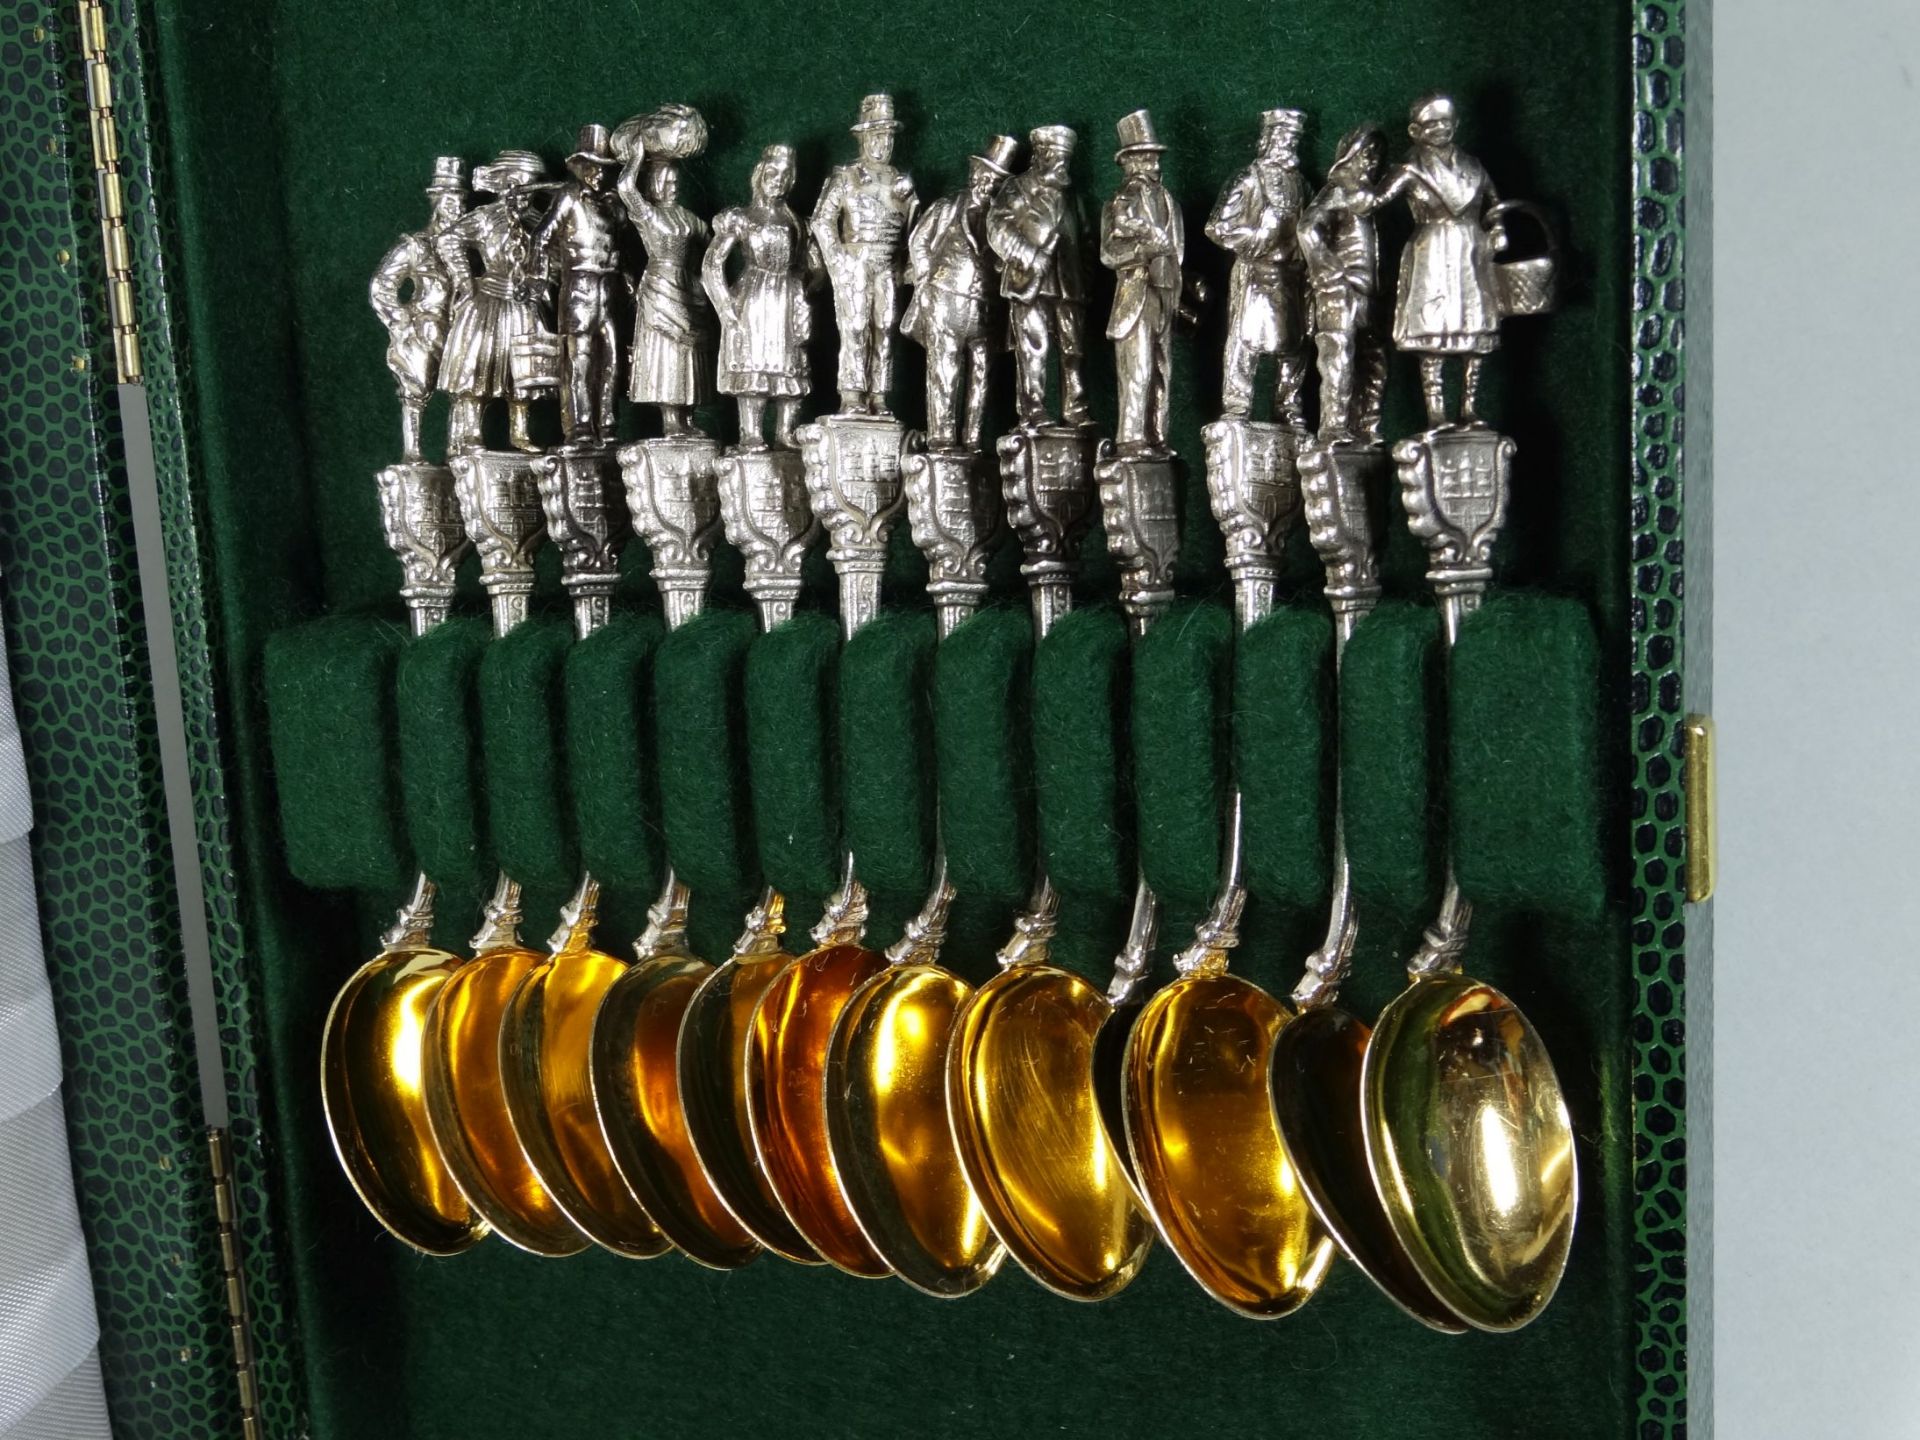 12 figürliche Moccalöffel, Silber-800-, Hamburg, Laffe vergoldet, L-10 cm, zus. 156 g - Bild 2 aus 9